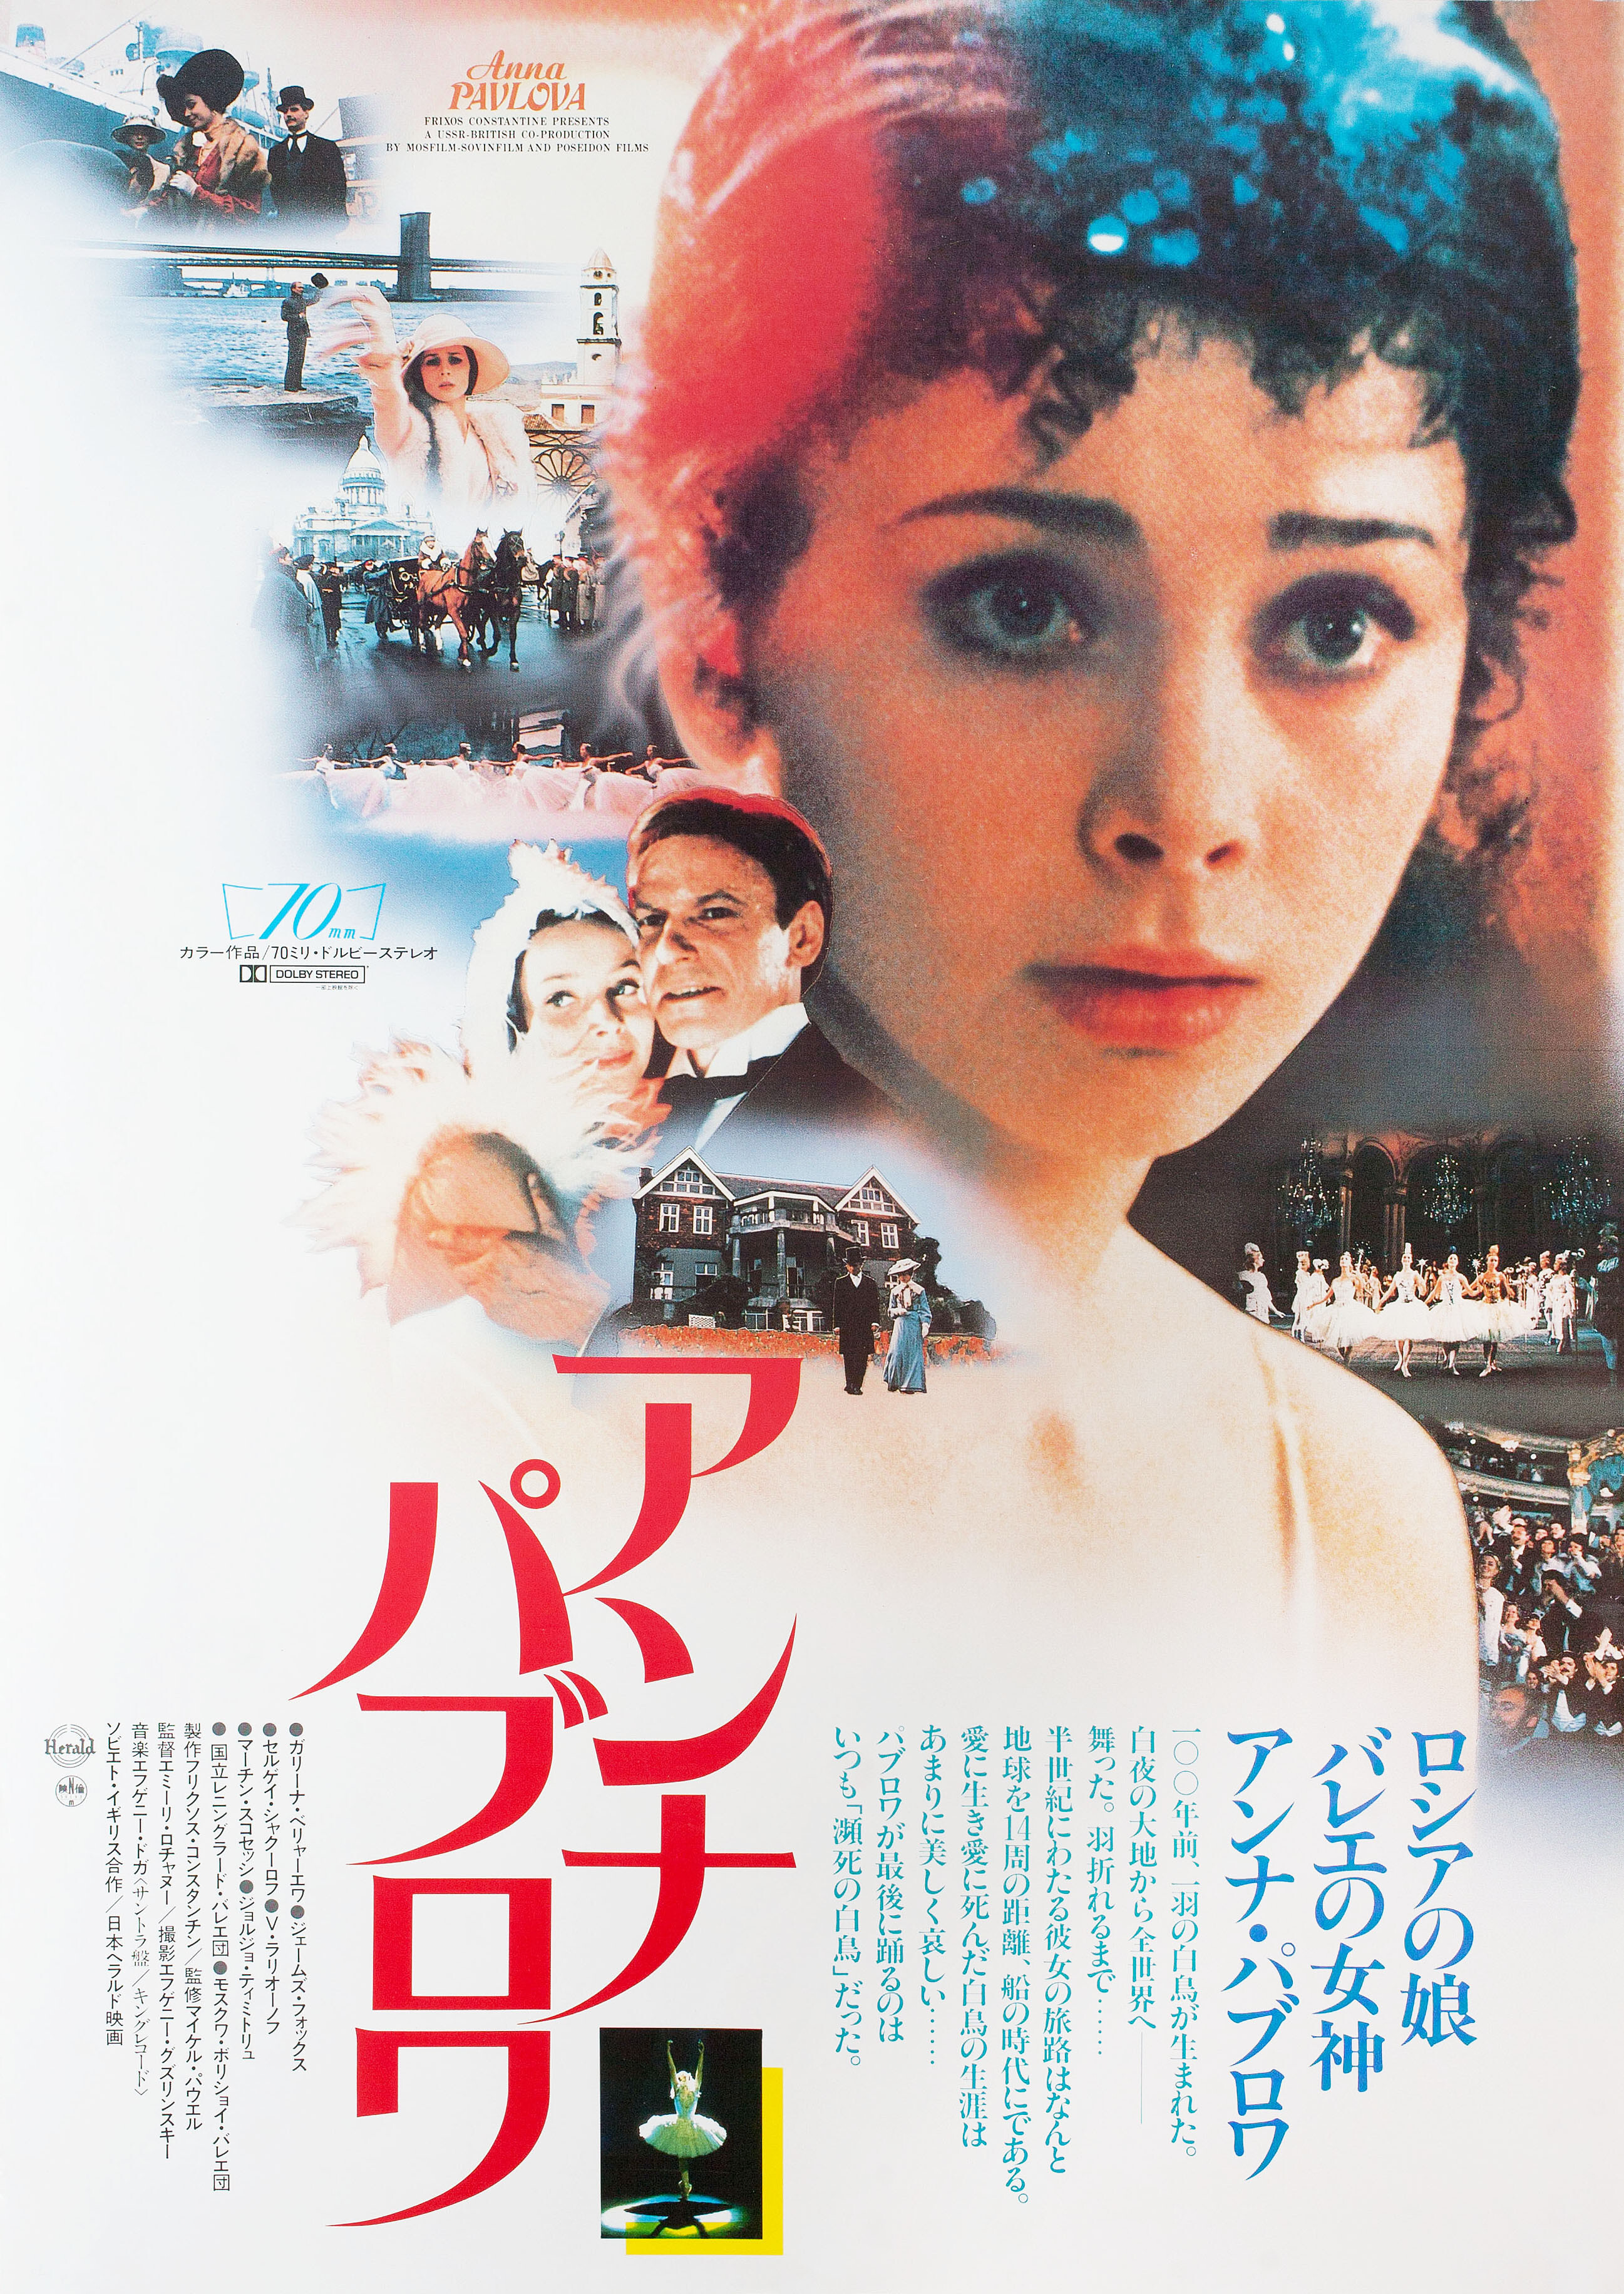 Анна Павлова (режиссёр Эмиль Лотяну, 1983), японский постер к фильму, 1983 год